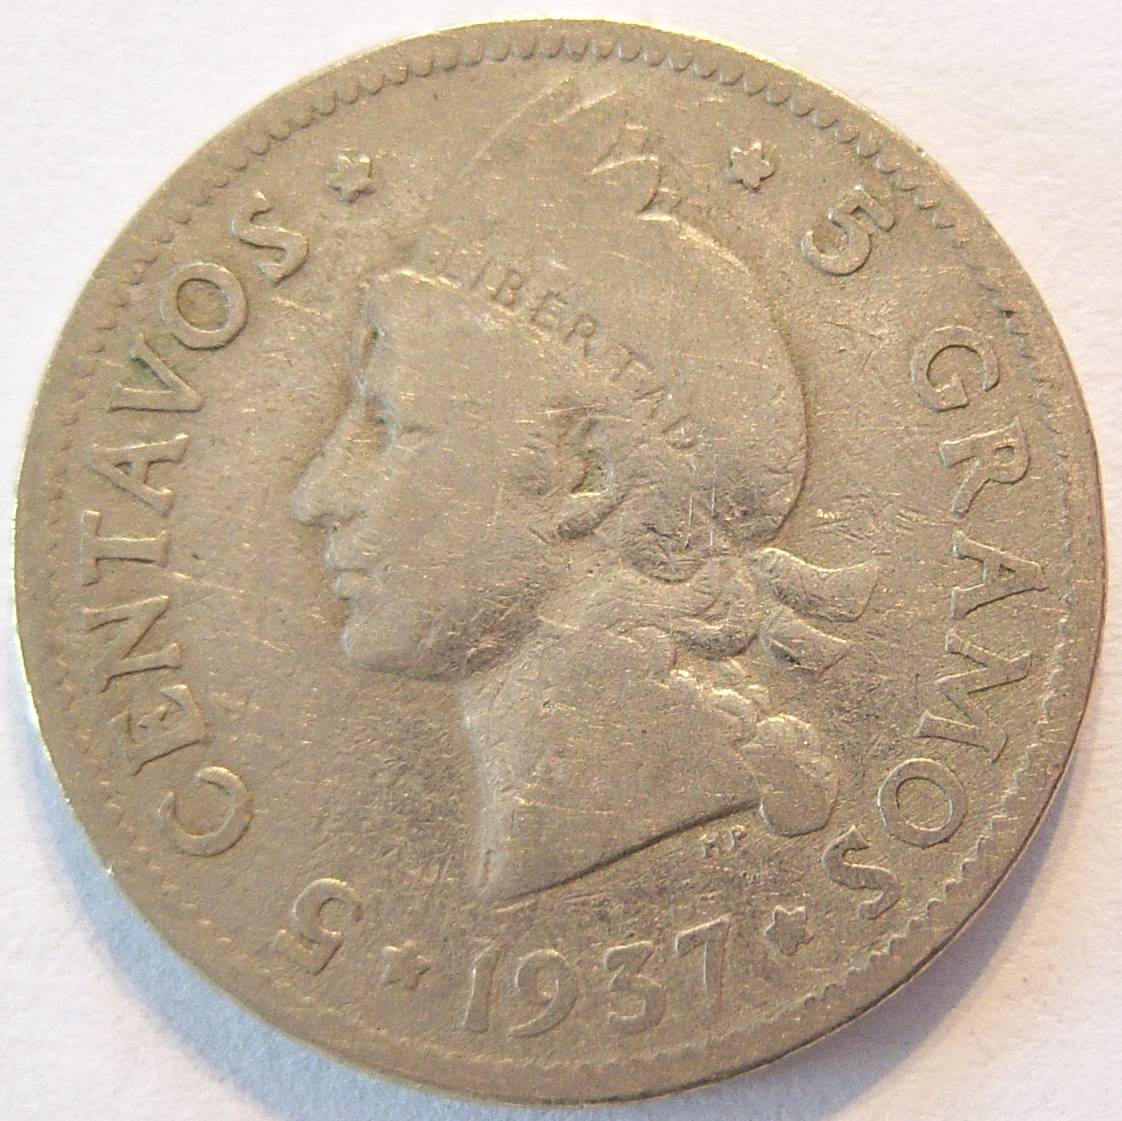  Dominikanische Republik 5 Centavos 1937   